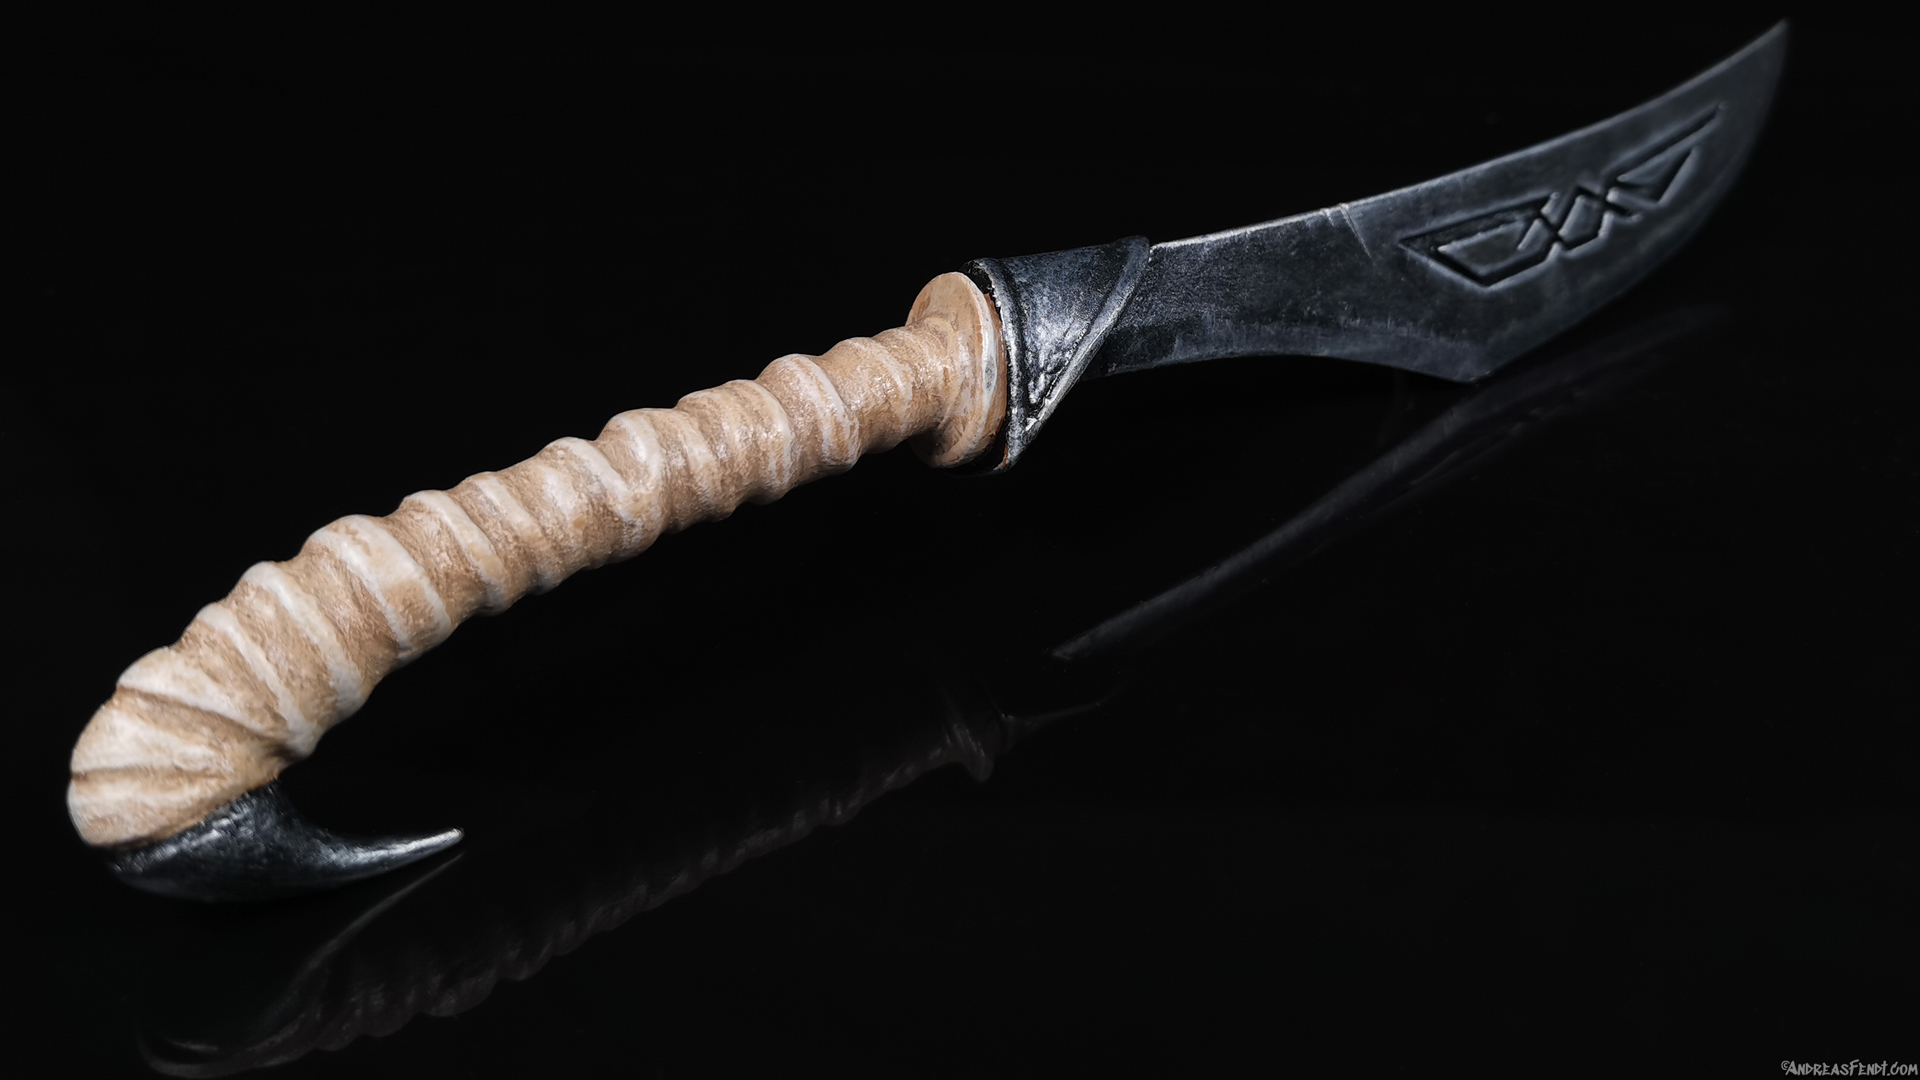 Skyrim nordic caved dagger painted 3D-Print model bone